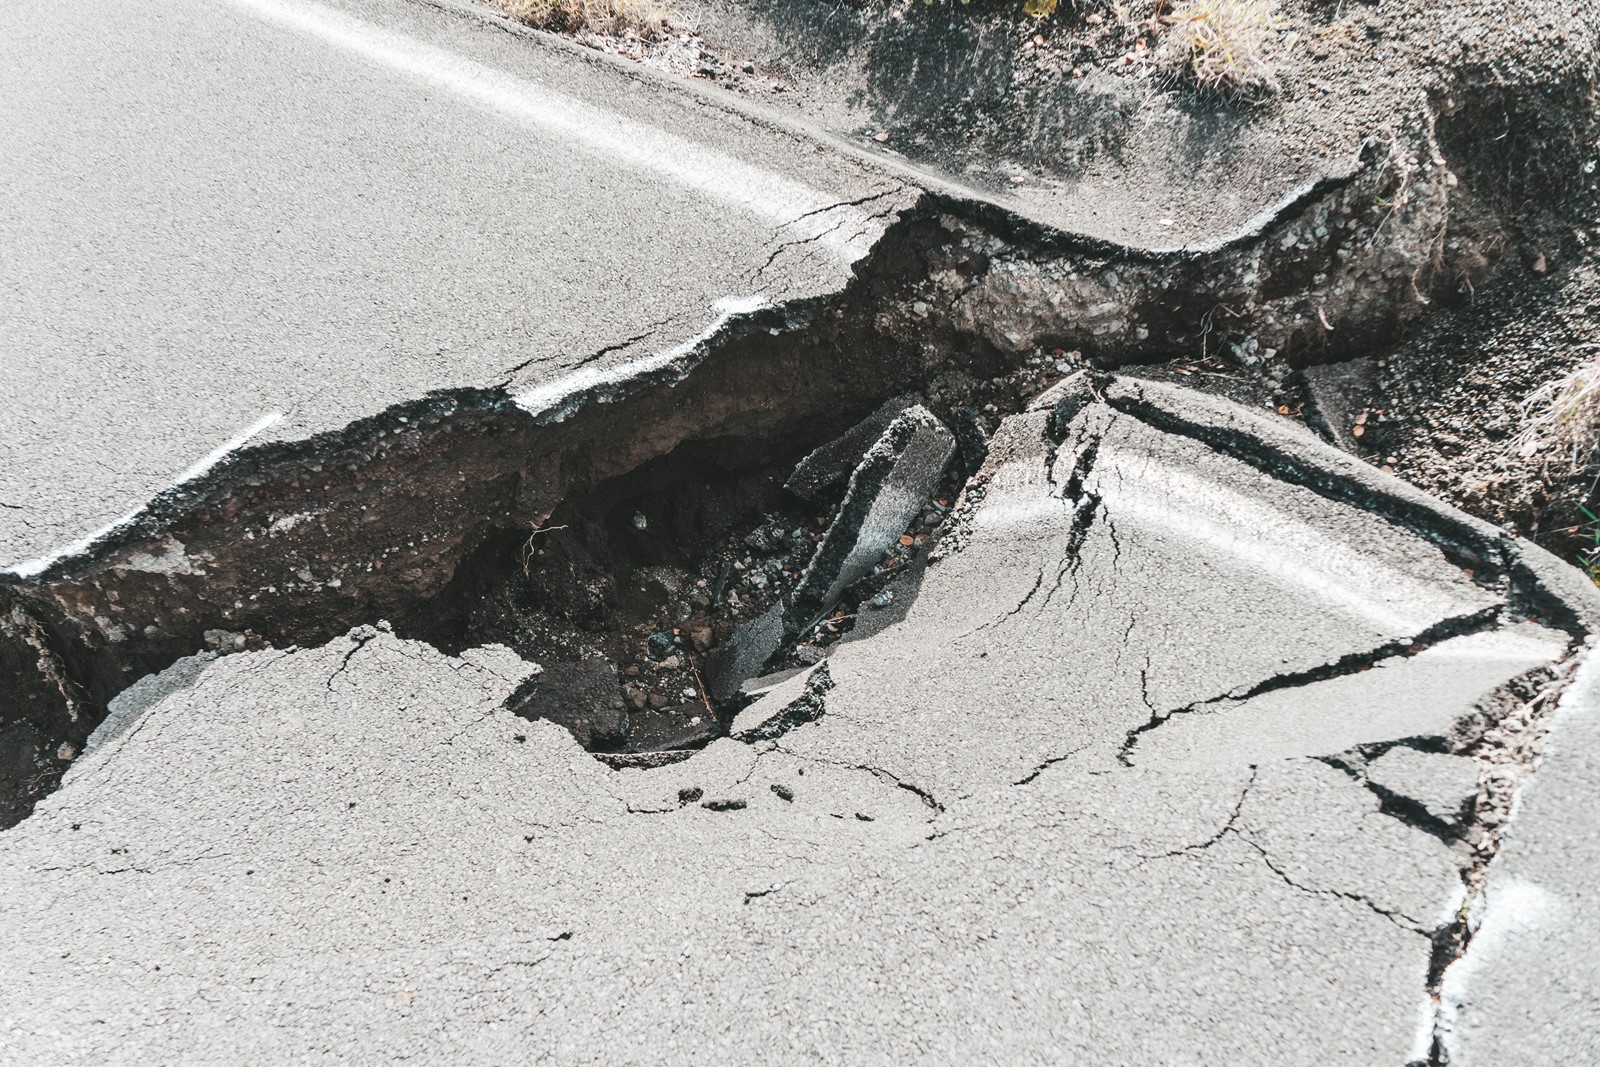 Earthquake crack in road